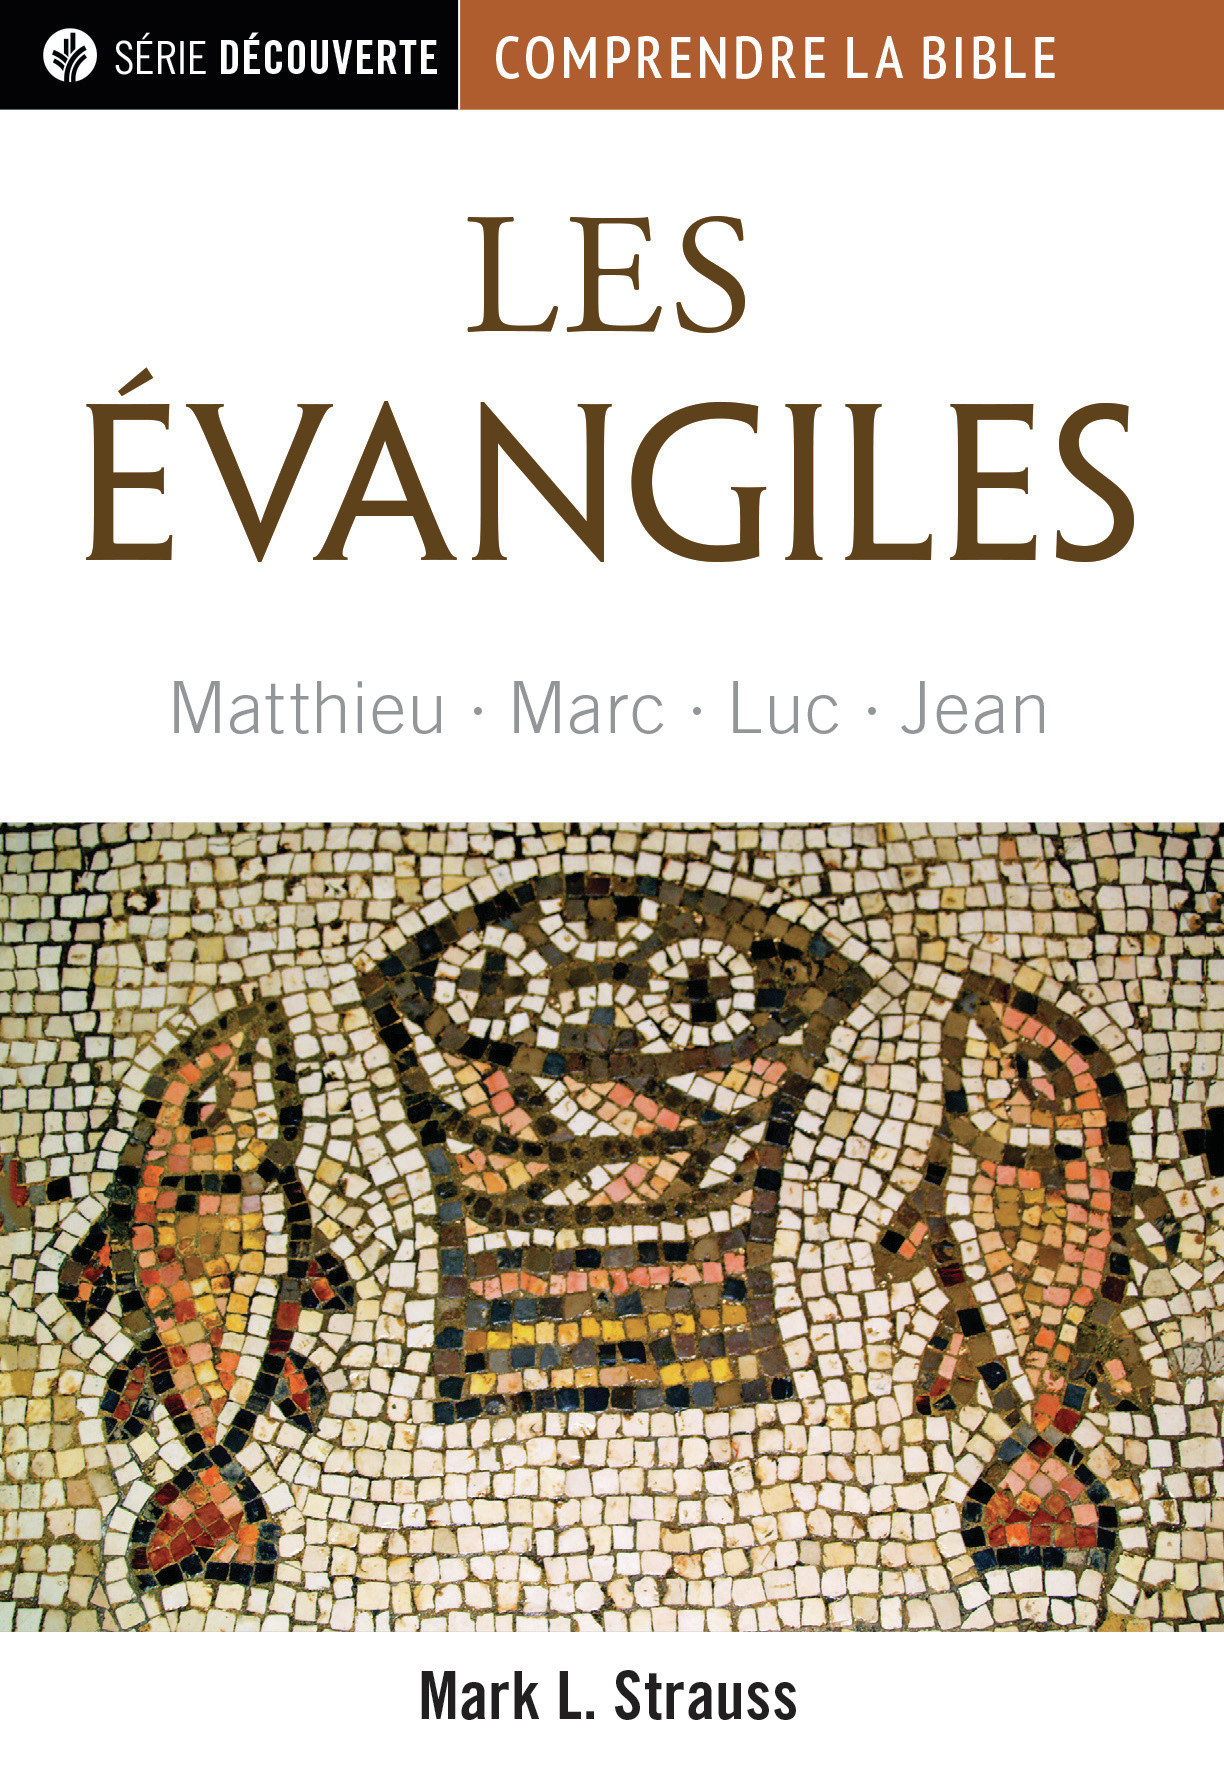 Évangiles (Les) - Matthieu, Marc, Luc, Jean [brochure NPQ série découverte]